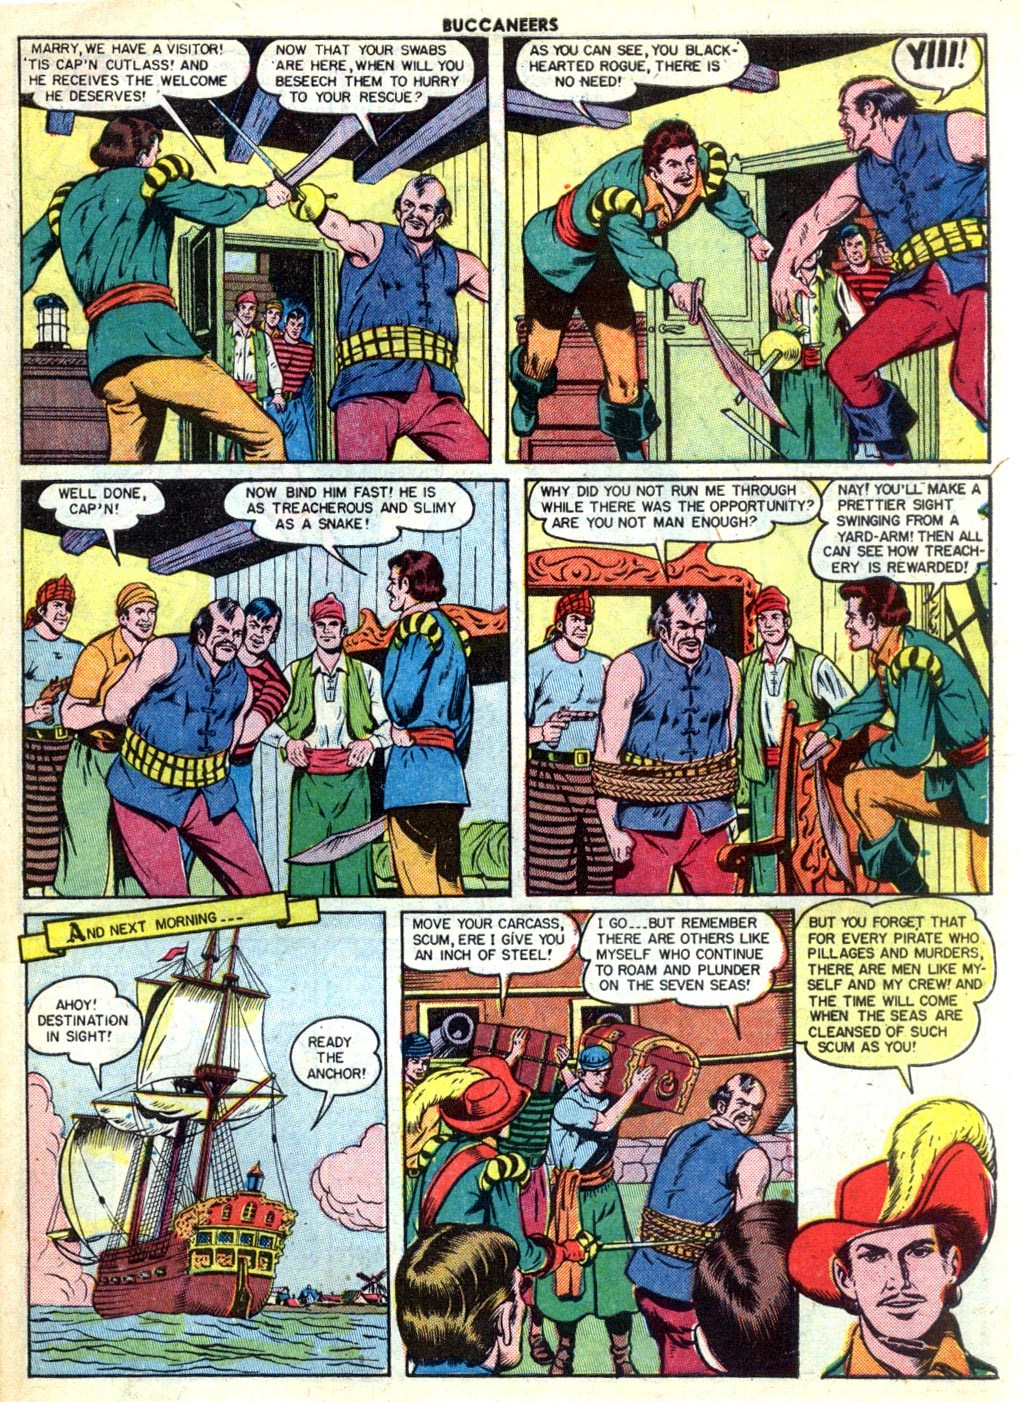 Read online Buccaneers comic -  Issue #27 - 41